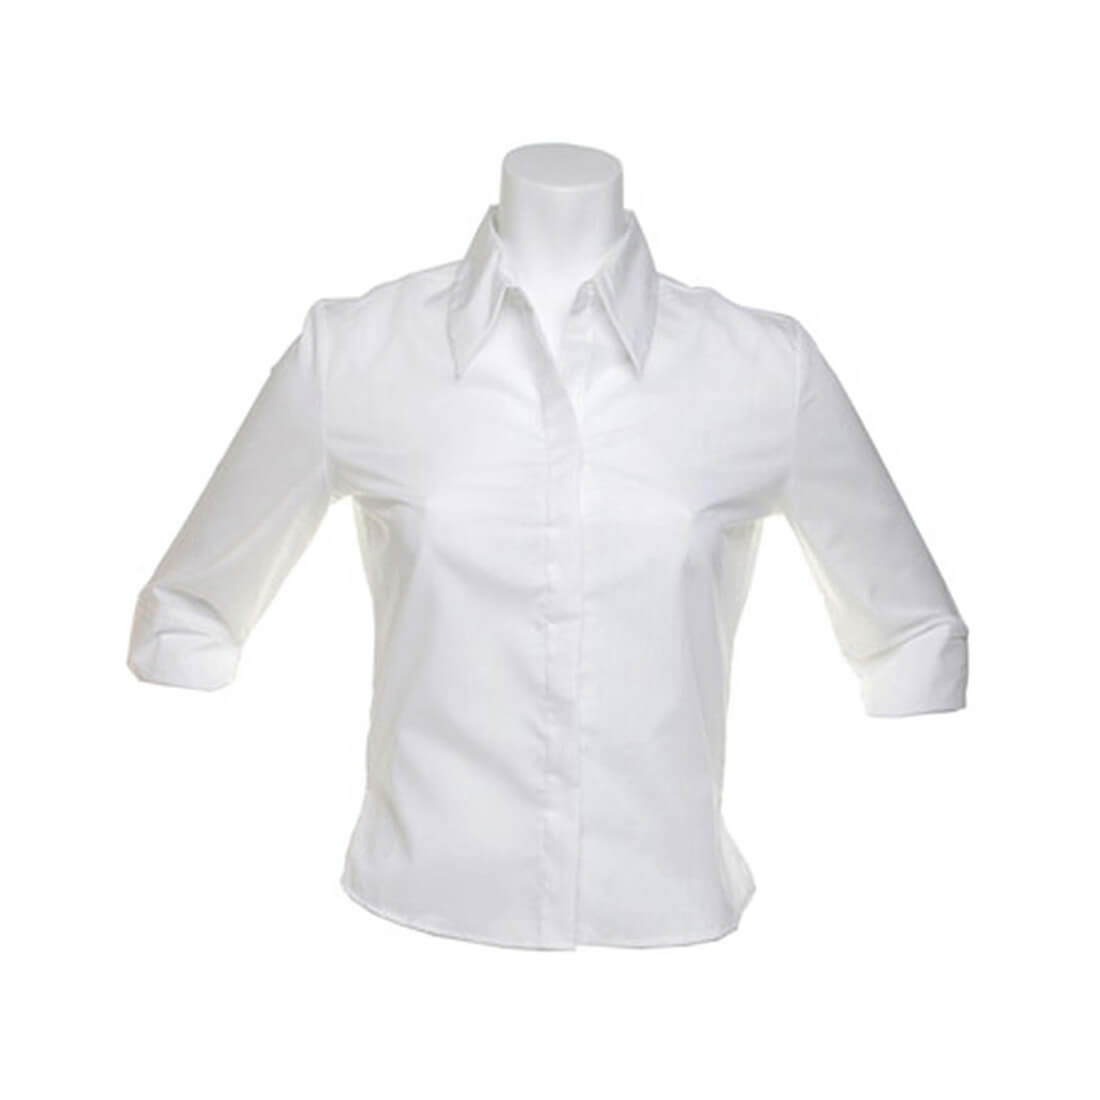 Blouse with 3/4 sleeve - Les vêtements de protection